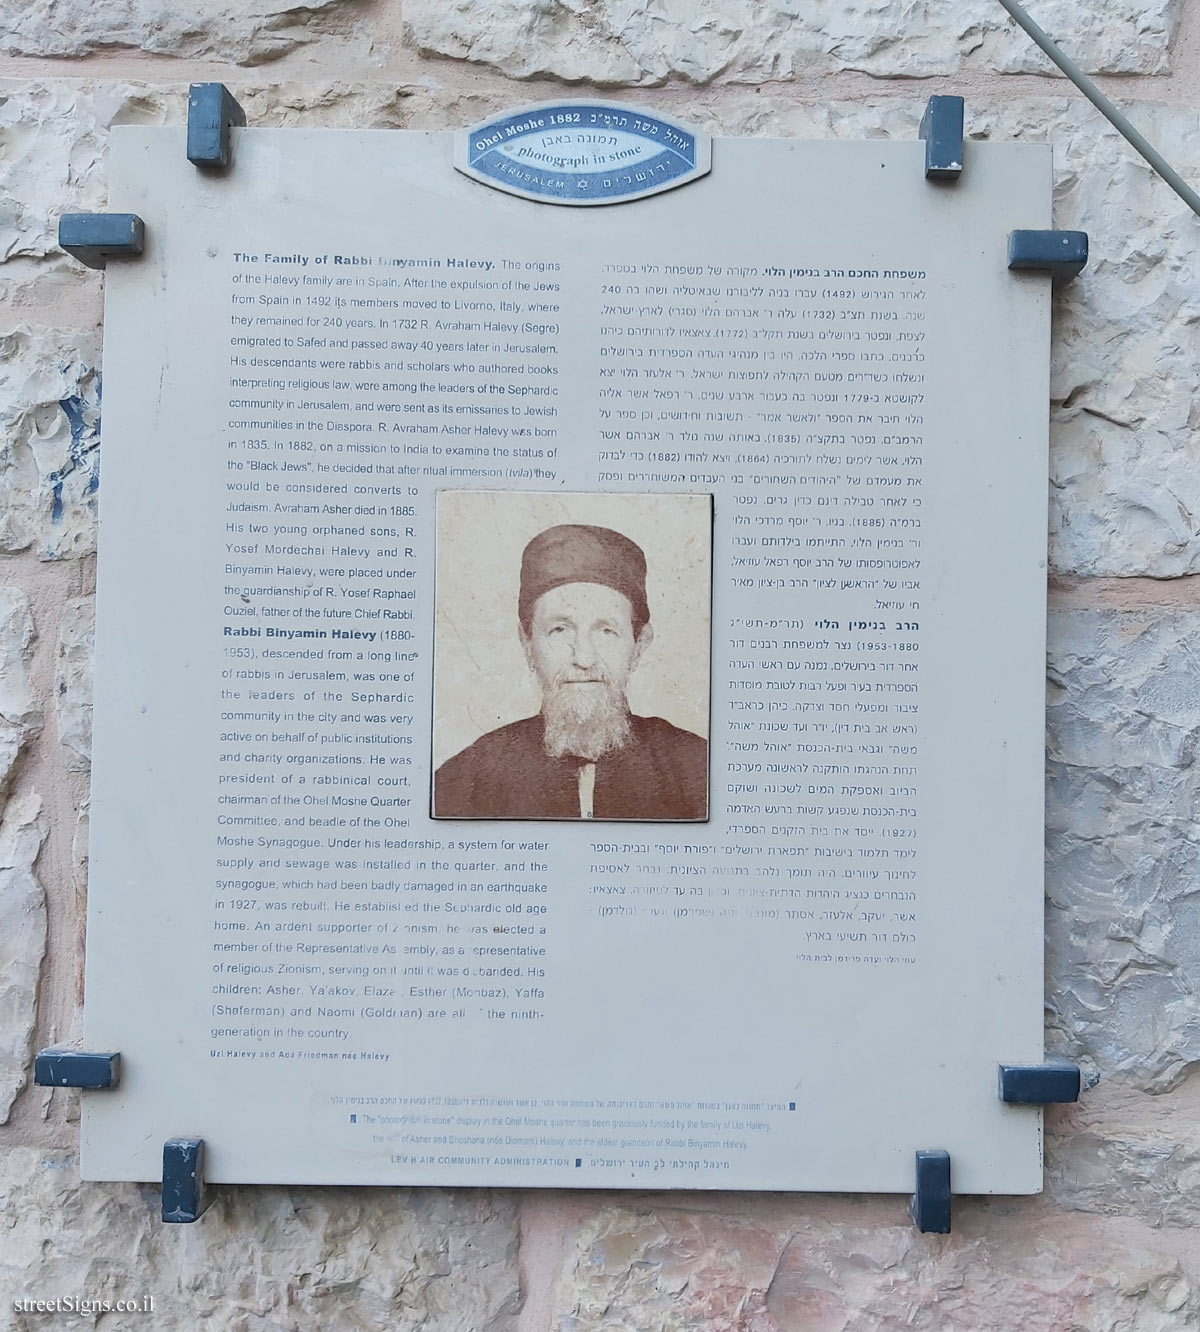 Jerusalem - Photograph in stone - The Family of Rabbi Binyamin Halevy